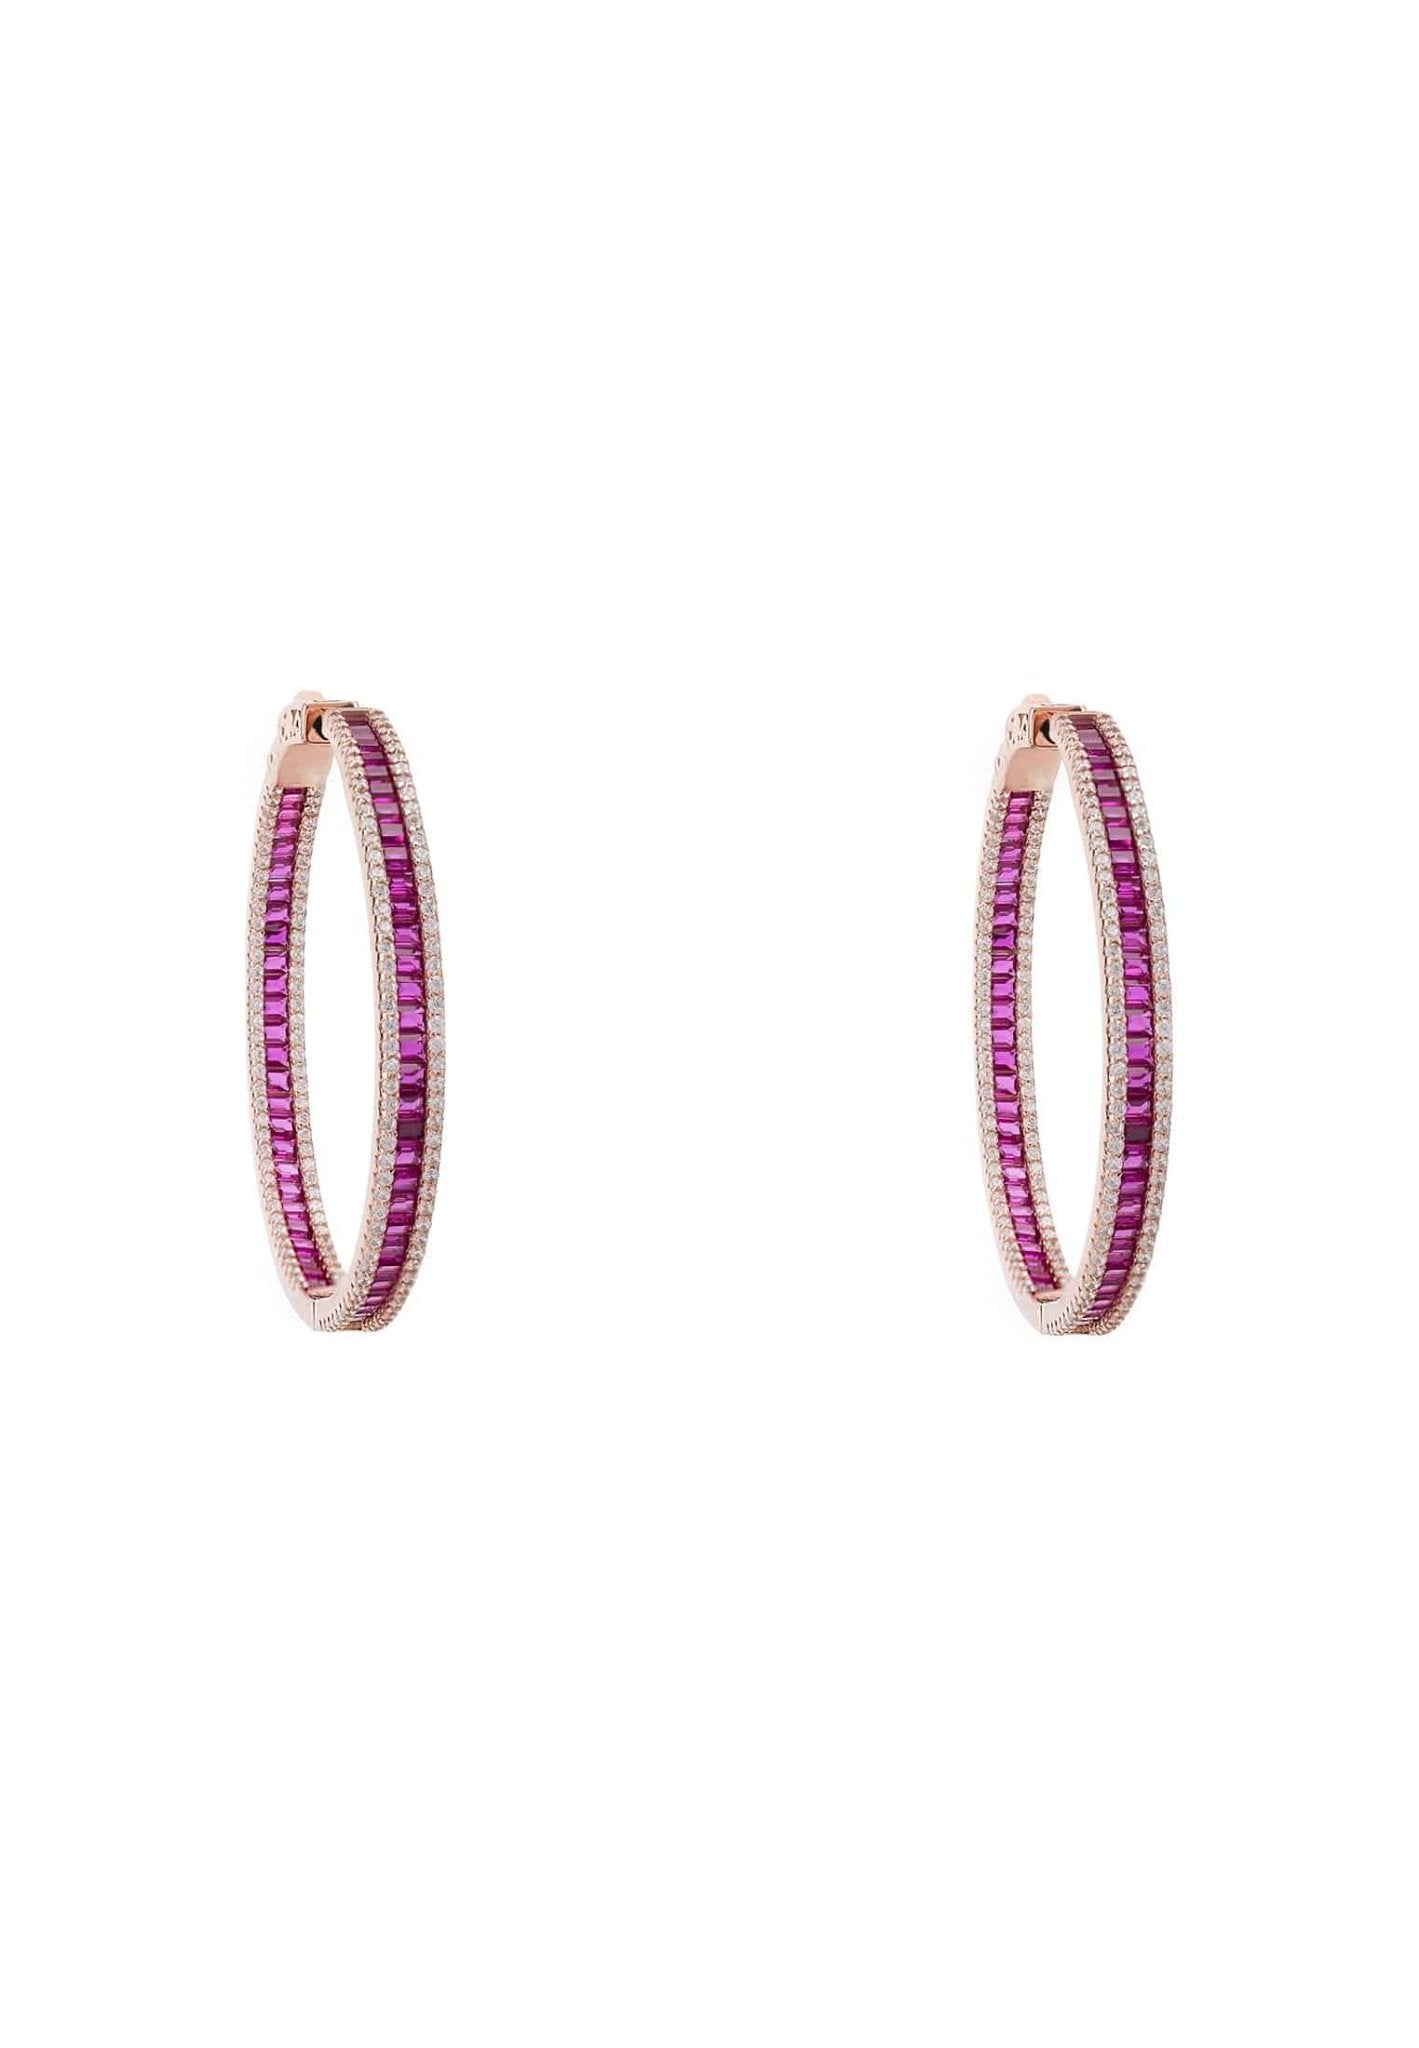 Baguette Large Hoop Large Earrings Rosegold Ruby Pink - LATELITA Earrings